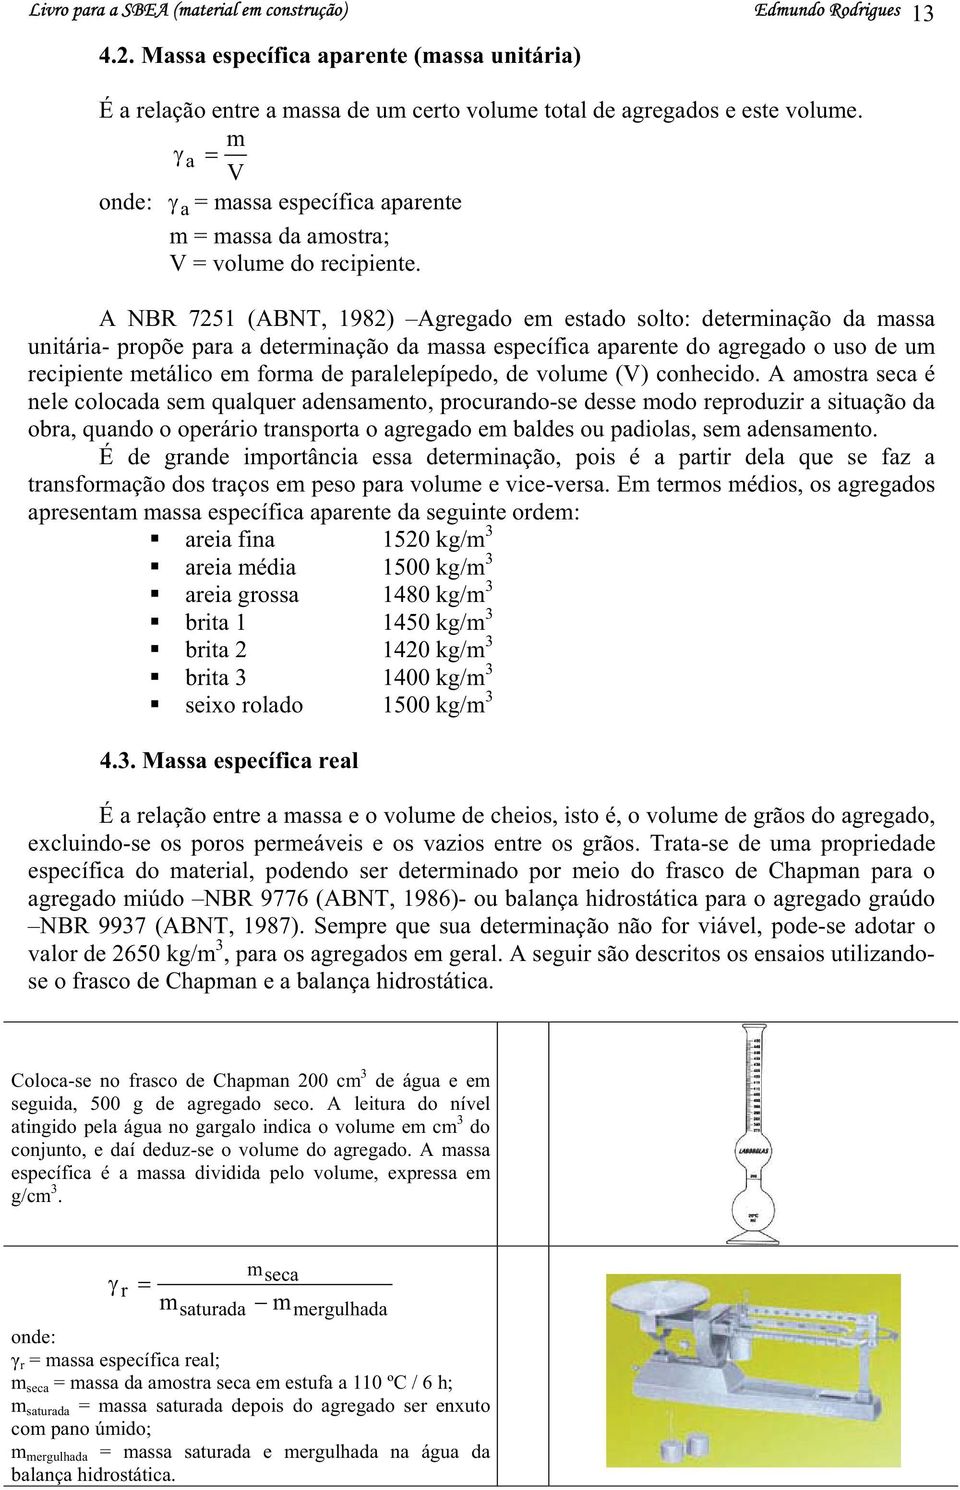 A NBR 7251 (ABNT, 1982) Agregado em etado olto: determinação da maa unitária- propõe para a determinação da maa epecífica aparente do agregado o uo de um recipiente metálico em forma de